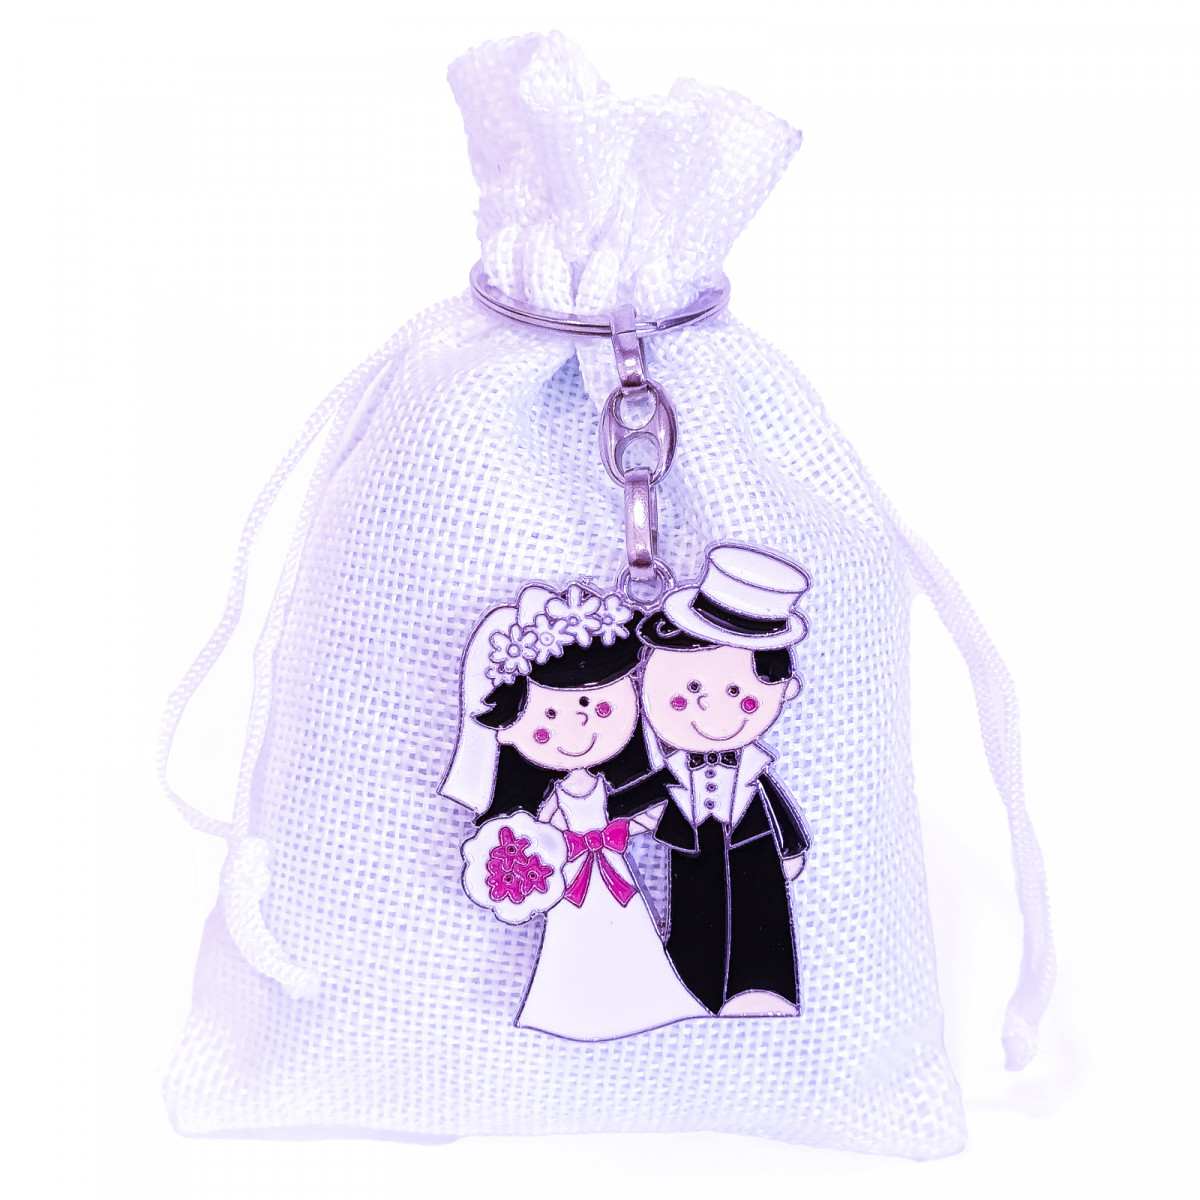 Llavero de pareja de novios presentado en bolsa de tela rústica blanca